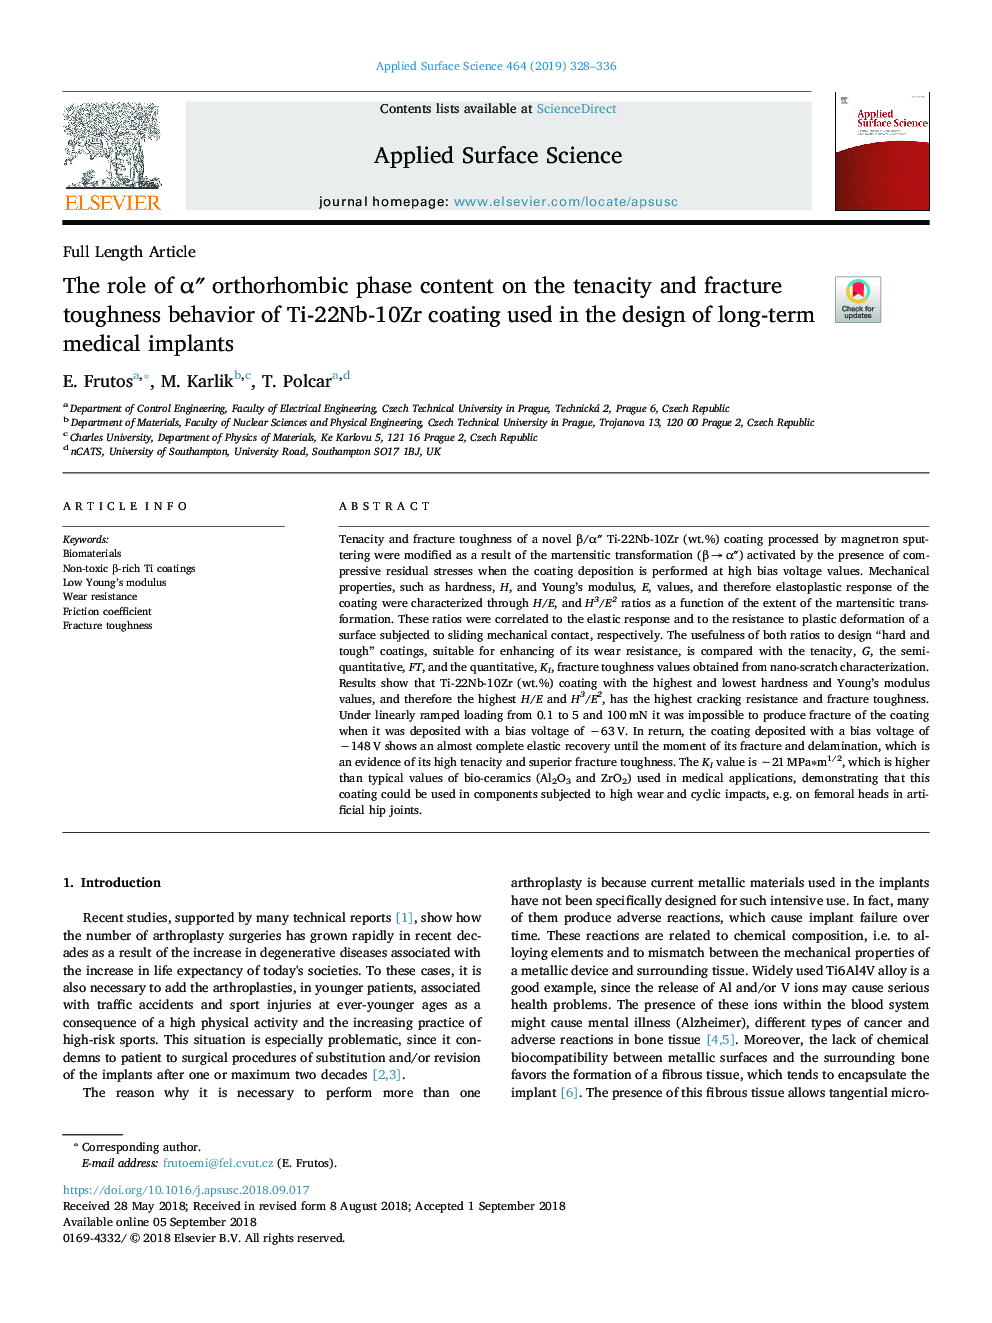 The role of Î±â³ orthorhombic phase content on the tenacity and fracture toughness behavior of Ti-22Nb-10Zr coating used in the design of long-term medical implants